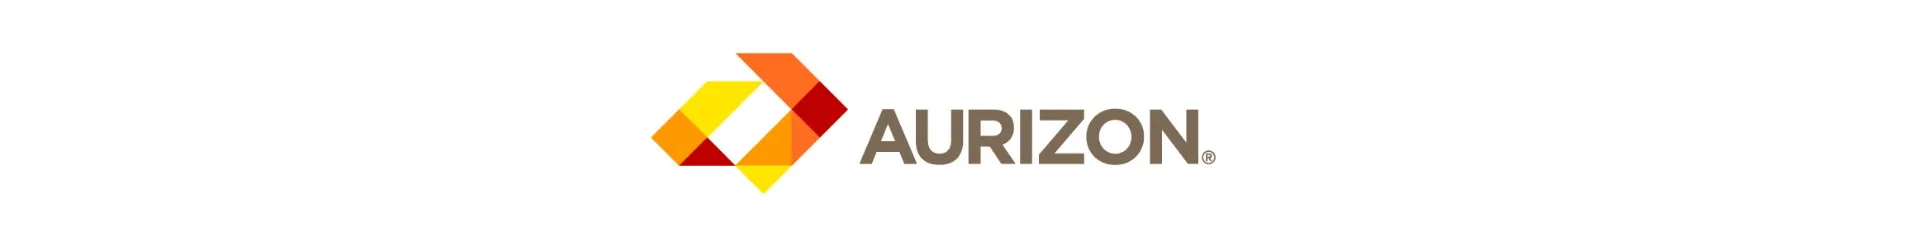 Aurizon-Logo-15122021